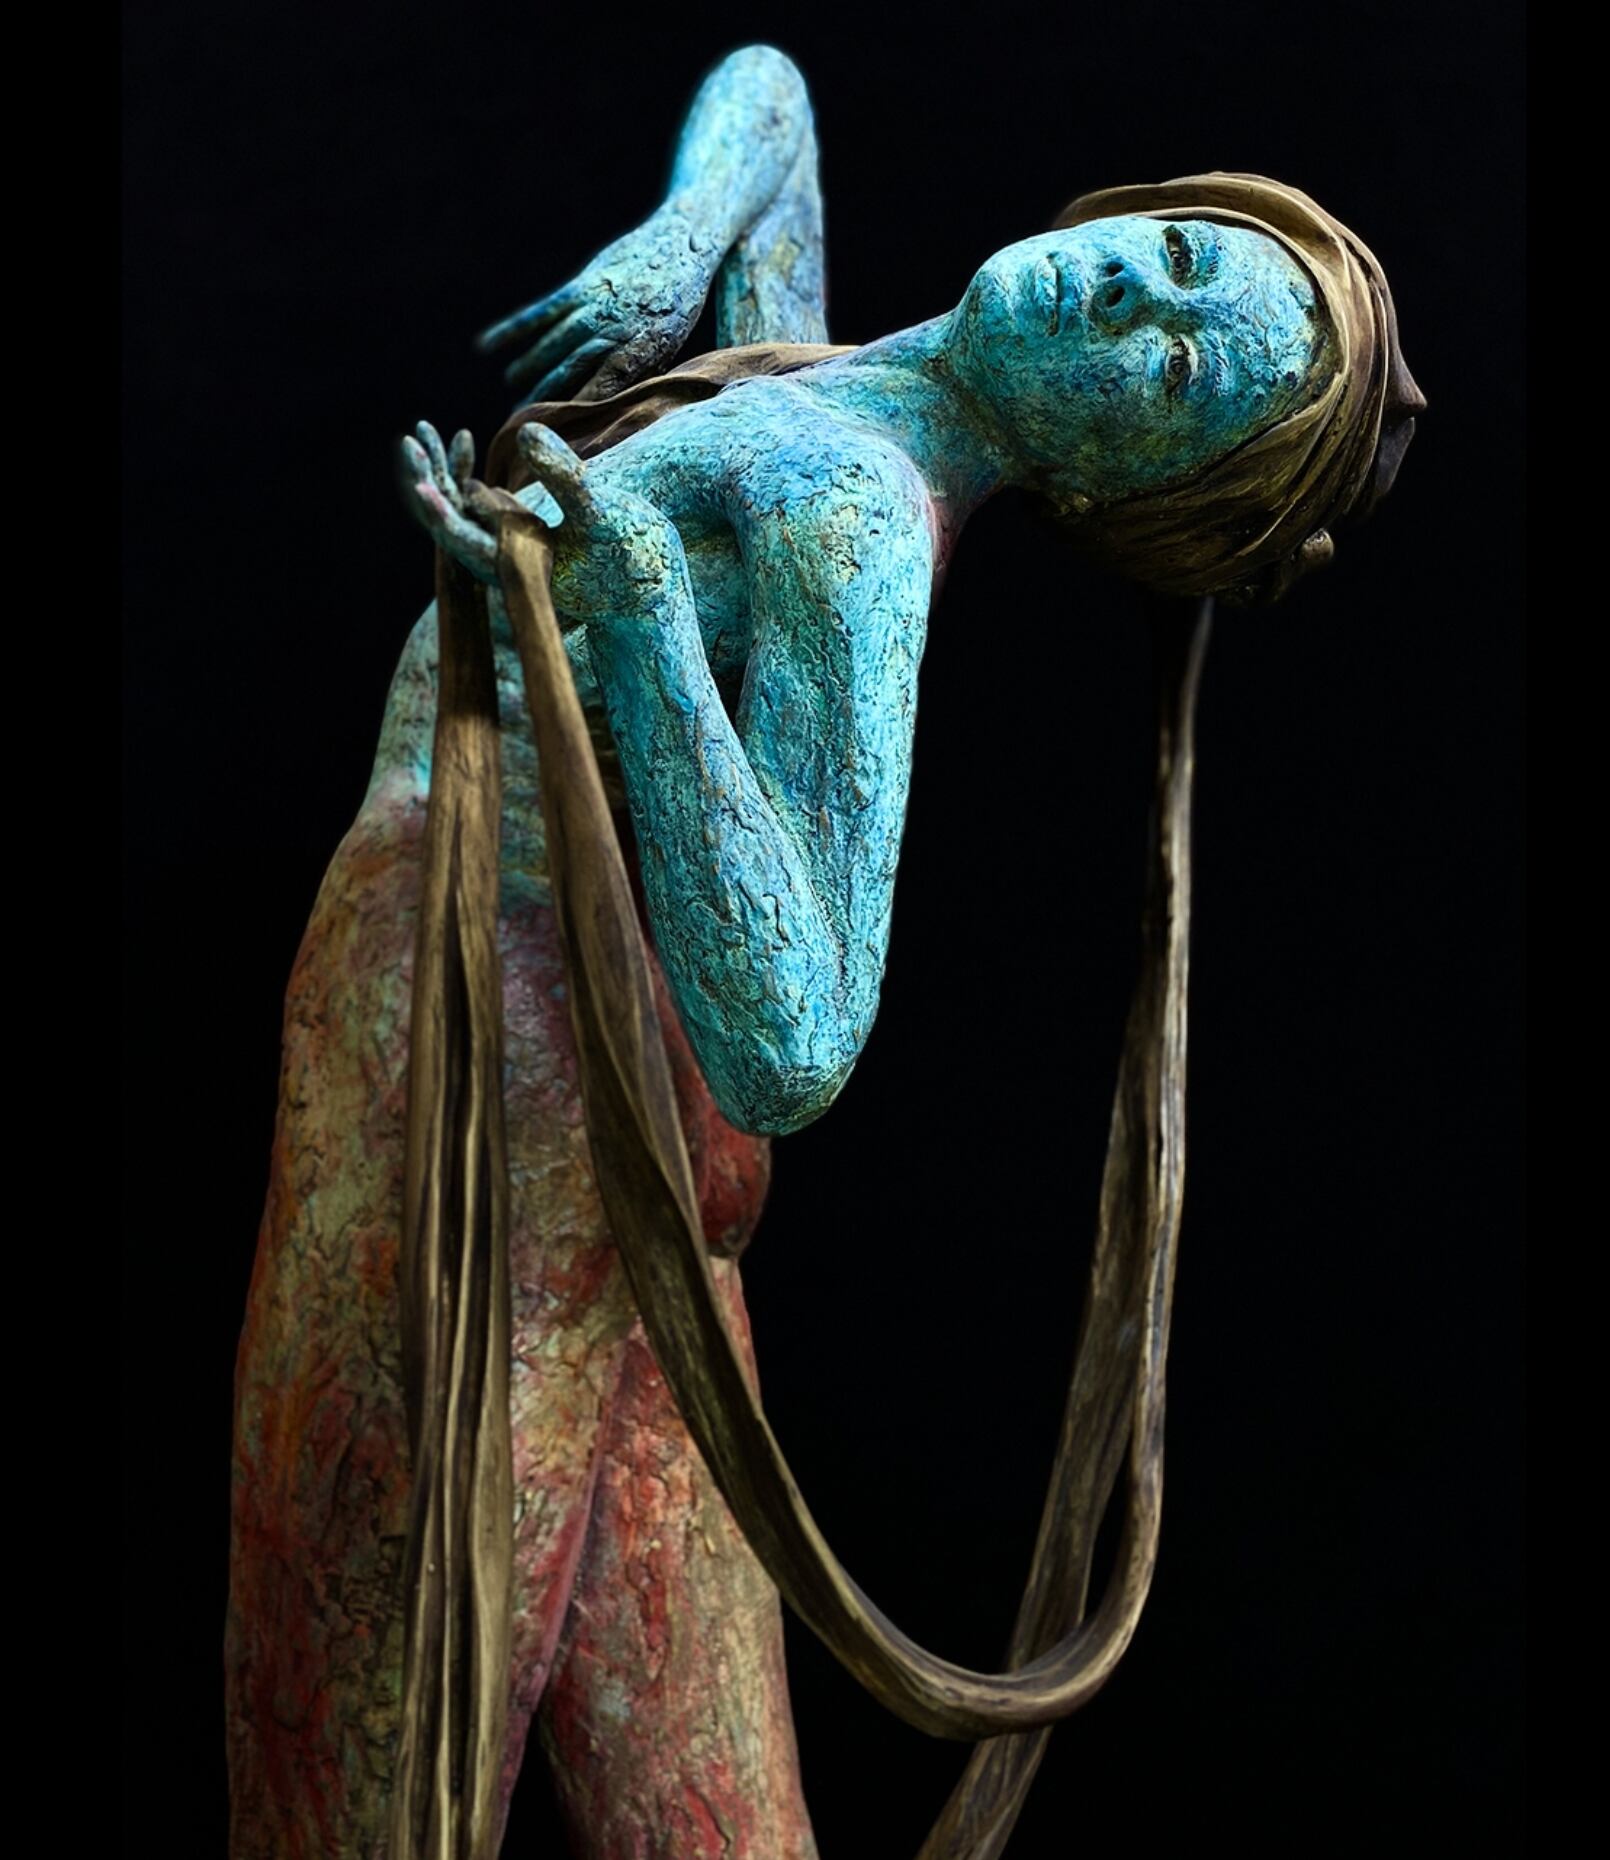 Escultura de una mujer en tonos bronce y azul, de Walter Marin, presentada en la Miami Art Week